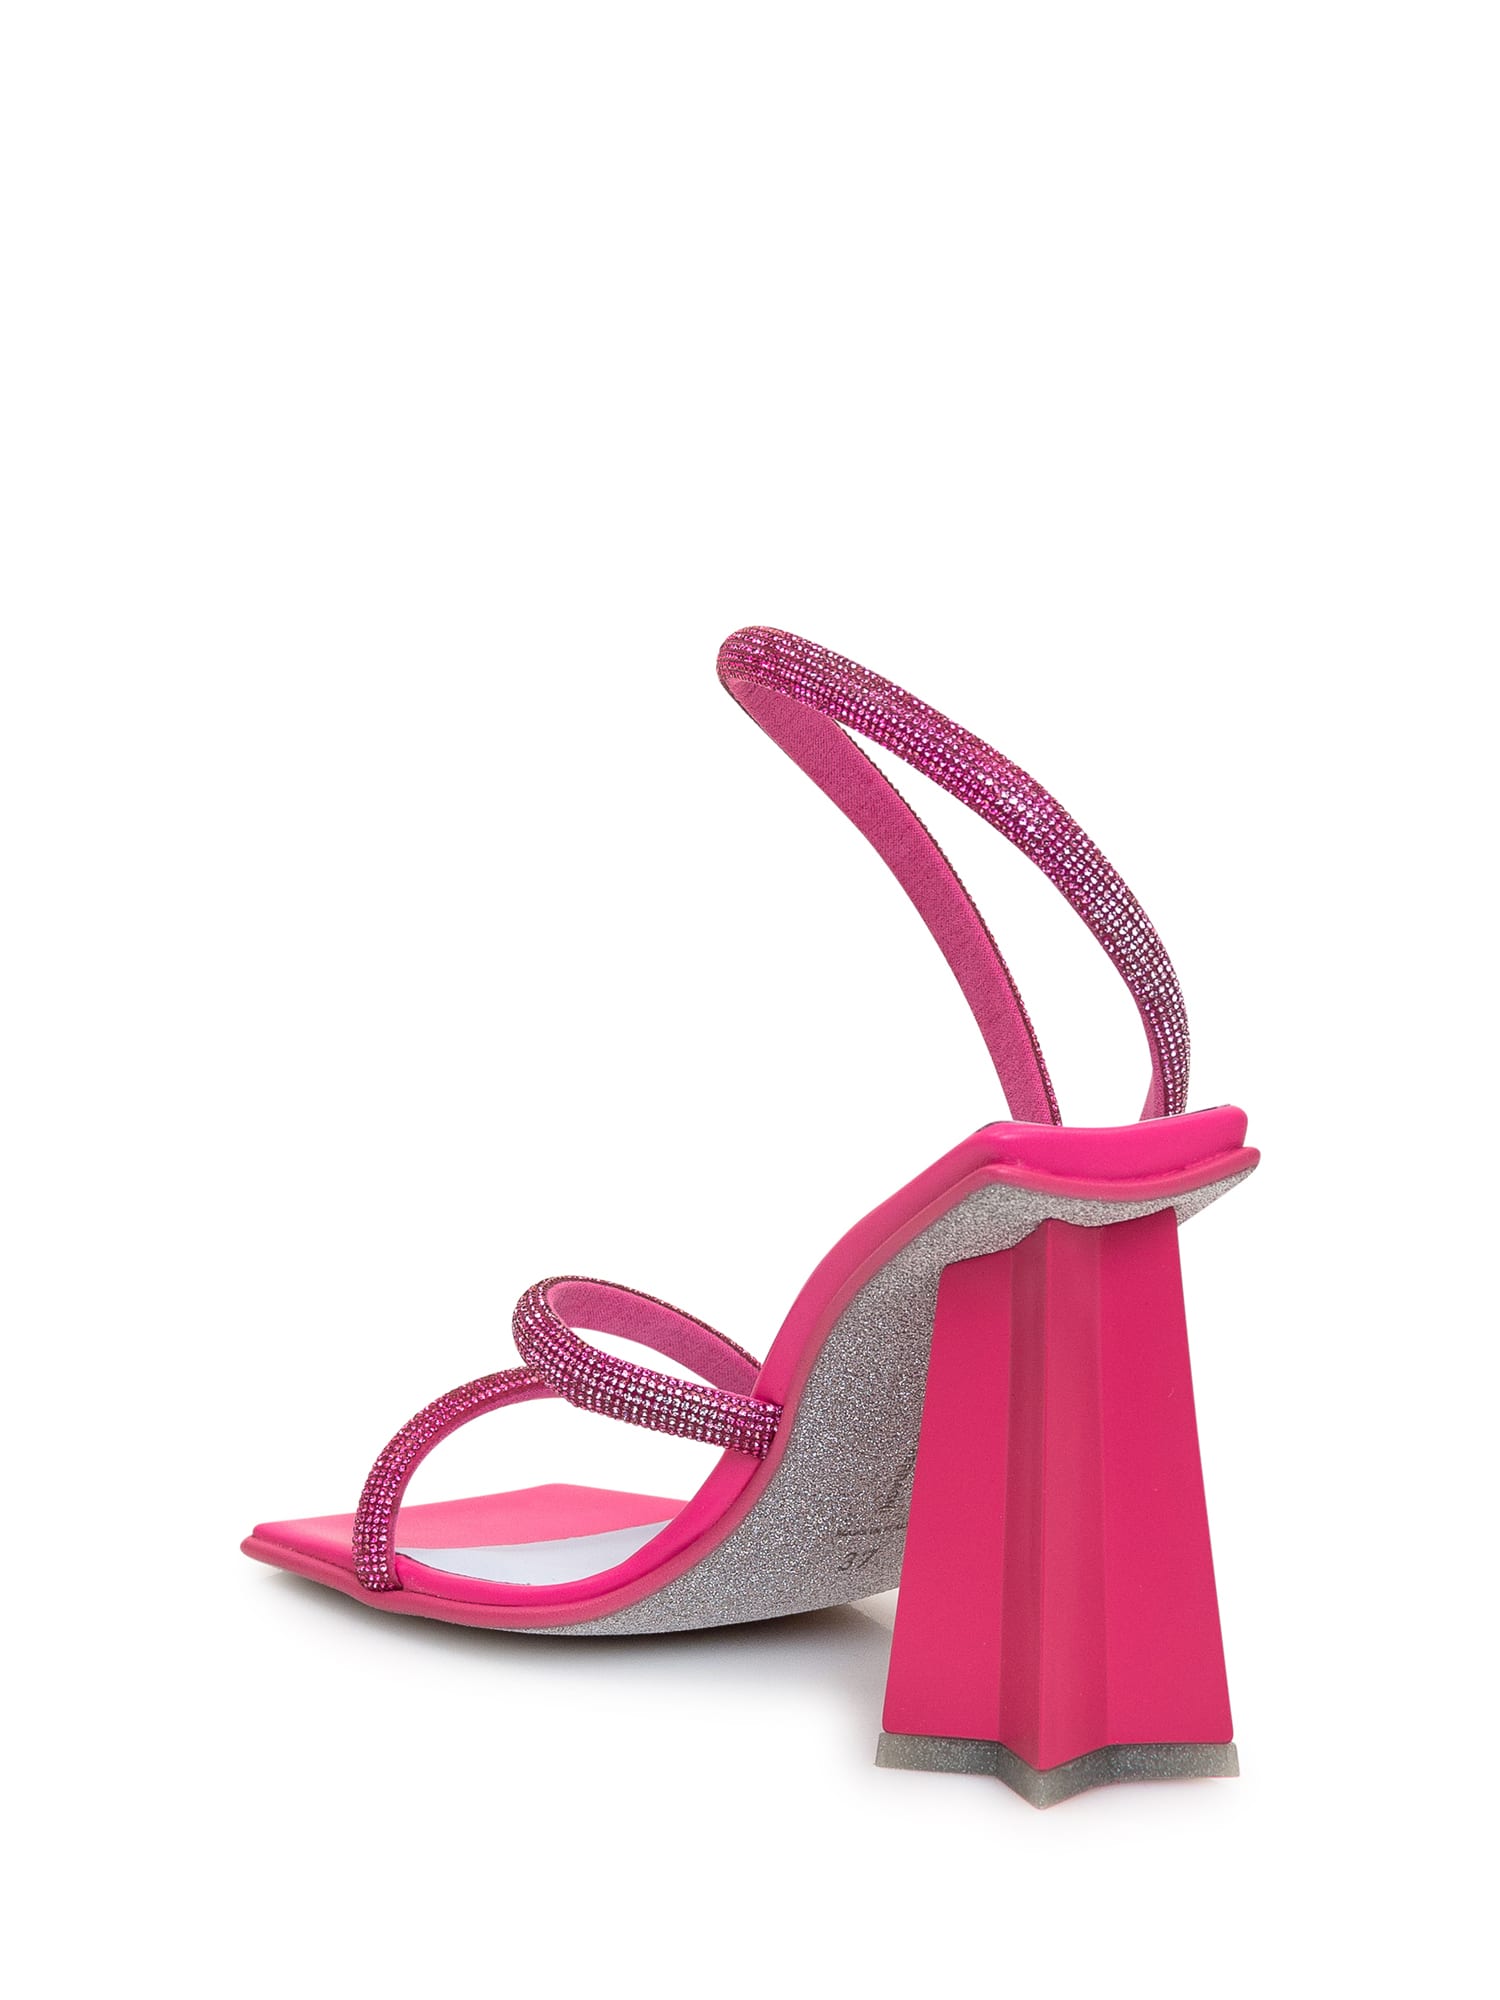 Shop Chiara Ferragni Andromeda Rhinestones Sandal In Carmine Rose Strass